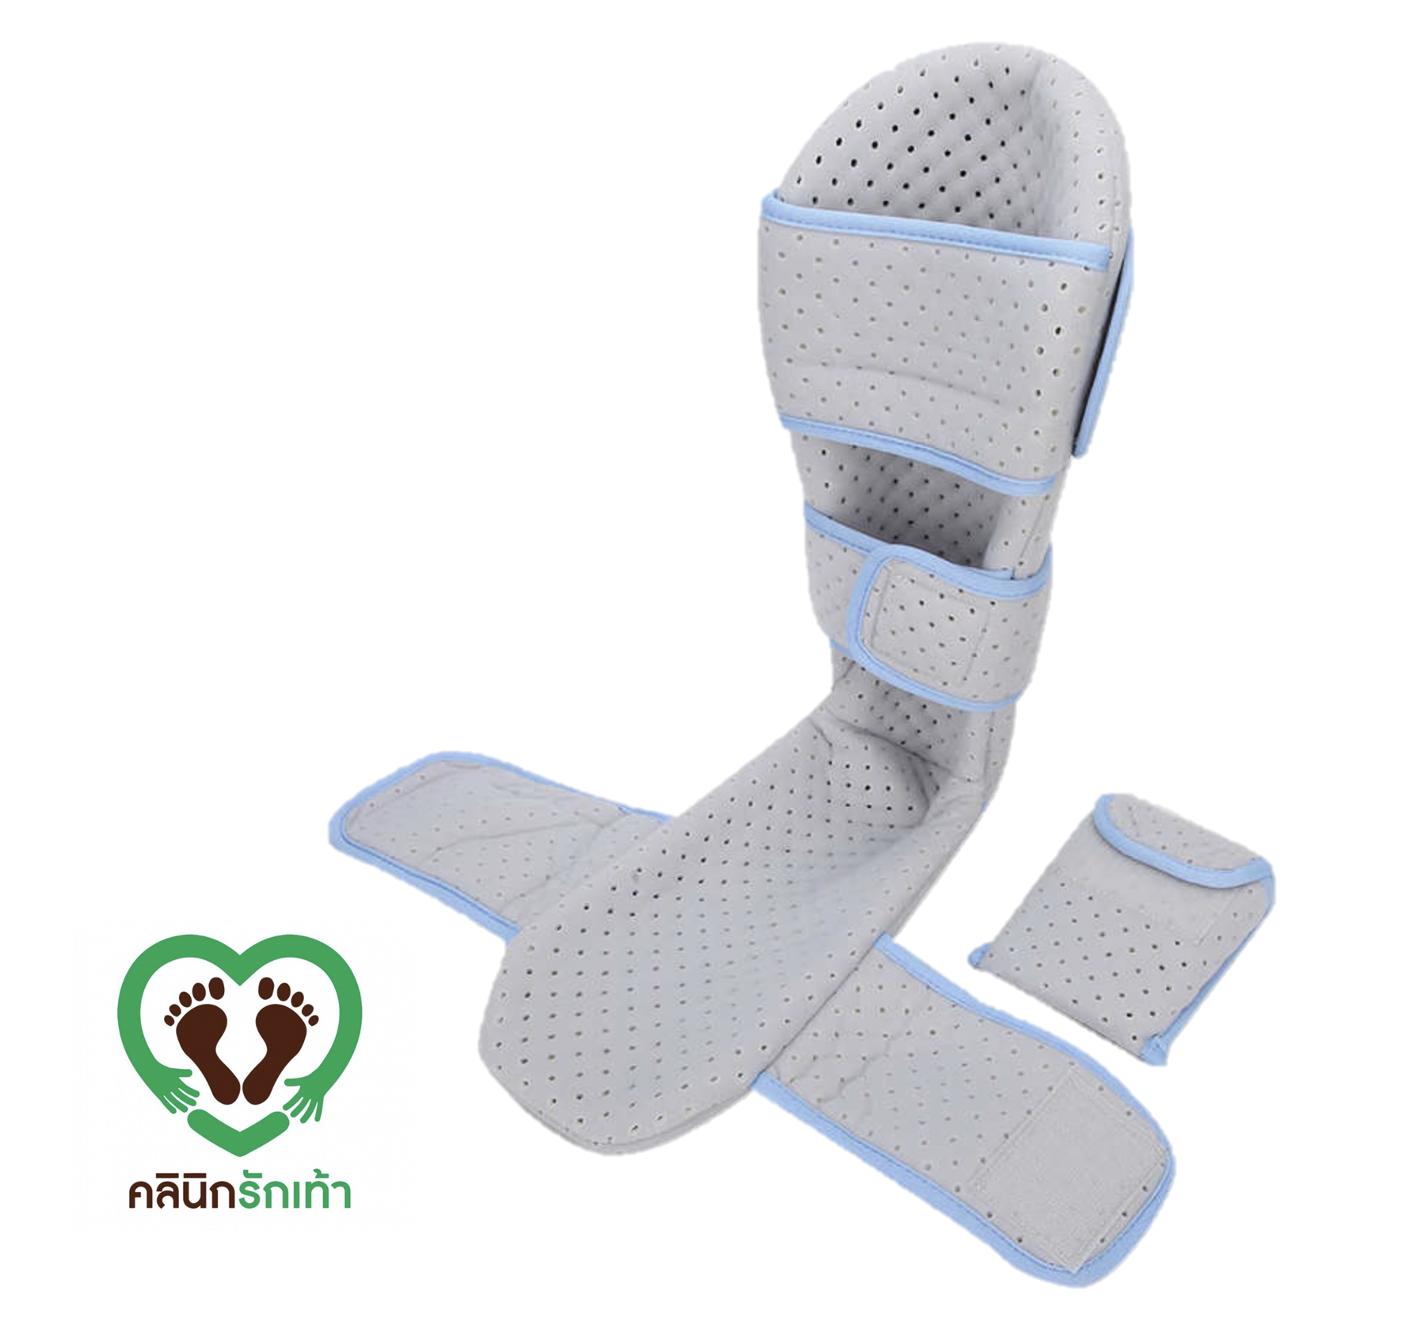 Night Slap อุปกรณ์ใส่นอน สำหรับผู้มีอาการเอ็นข้อเท้าอักเสบ รองช้ำ  เอ็นร้อยหวายอักเสบ กระดูกเท้าชิ้นที่ 5 หรือ ข้อเท้าหัก